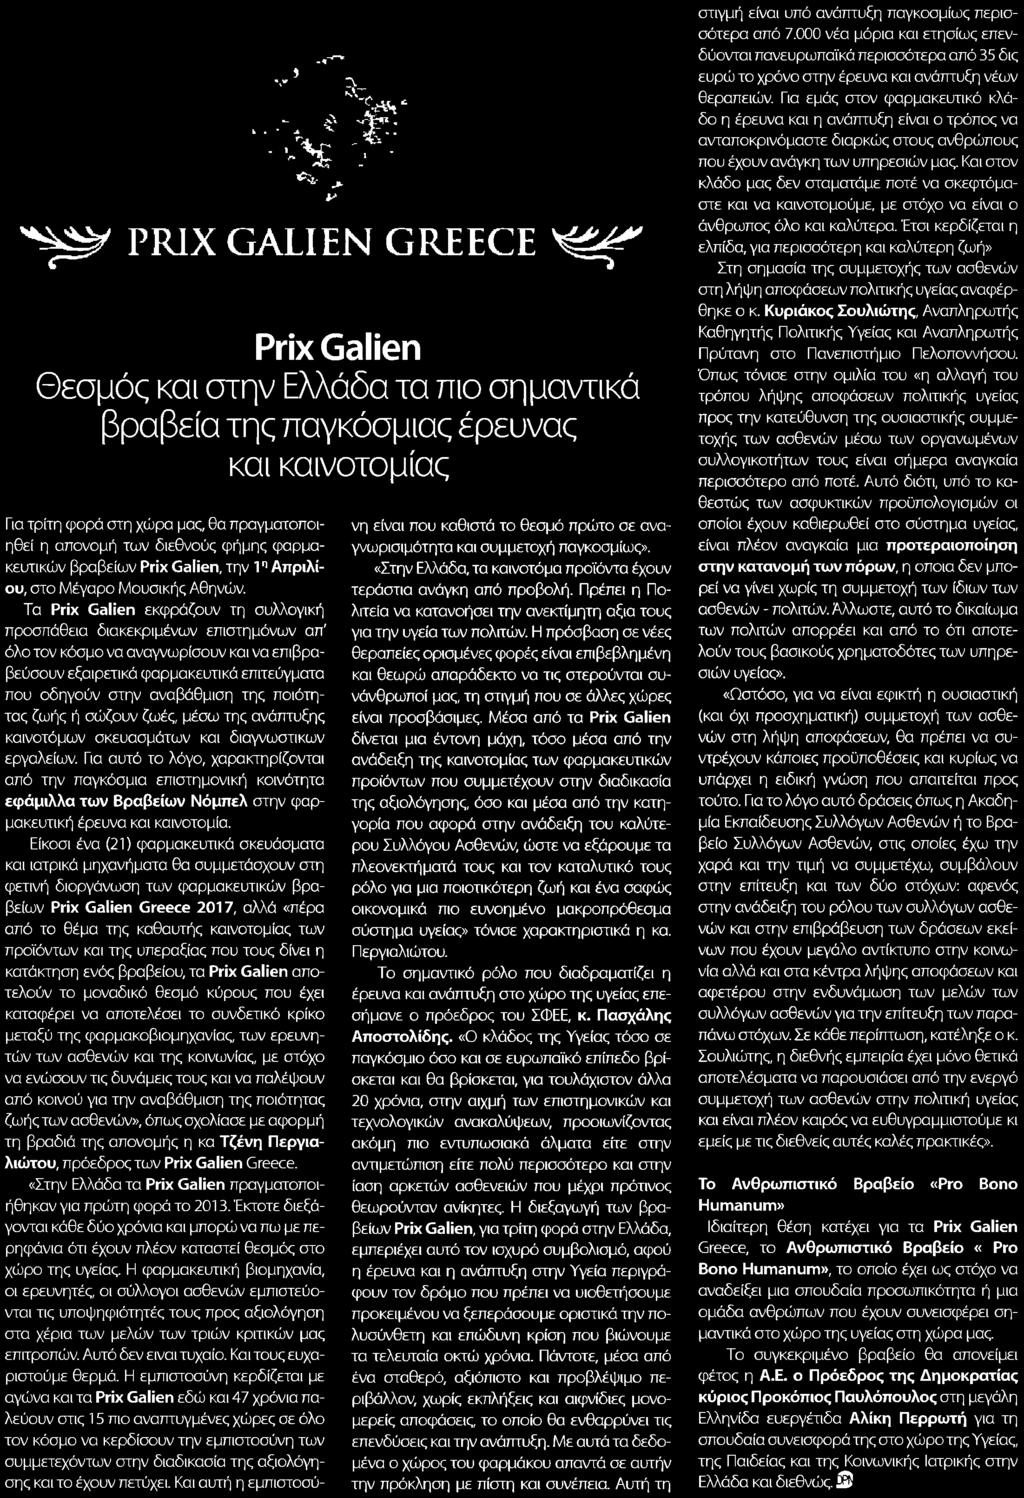 φήμης φαρμακευτικών βραβείων Prix Galien την 1n Απριλίου στο Μέγαρο Μουσικής Αθηνών Τα Prix Galien εκφράζουν τη συλλογική προσπάθεια διακεκριμένων επιστημόνων απ όλο τον κόσμο να αναγνωρίσουν και να